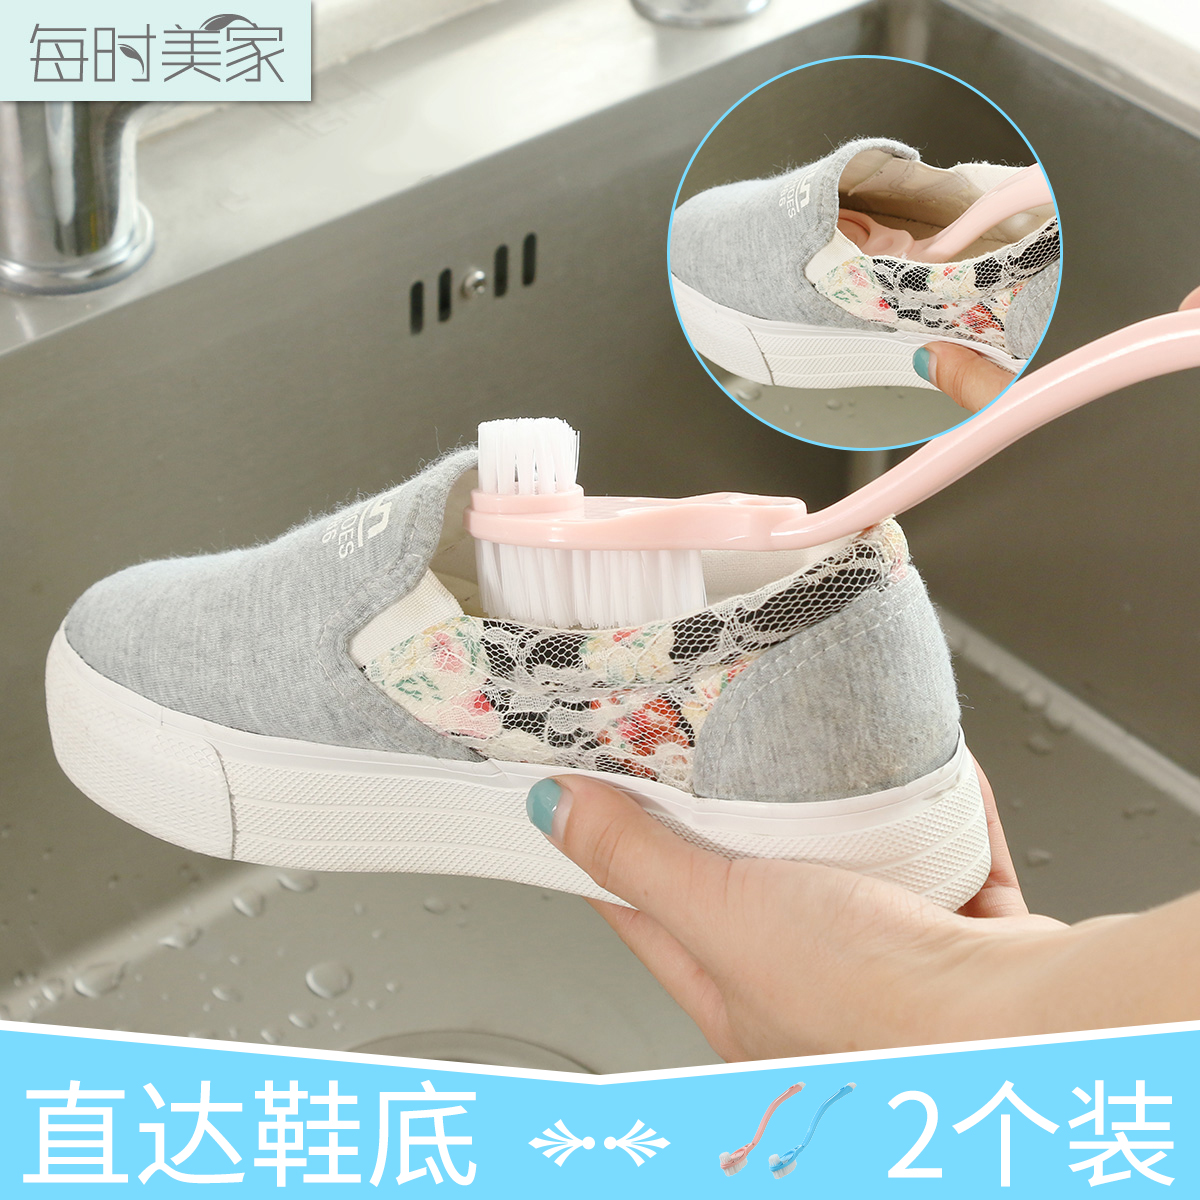 双头长柄洗鞋刷多功能凹槽清洗刷强力去污清洁刷洗鞋专用刷鞋内侧